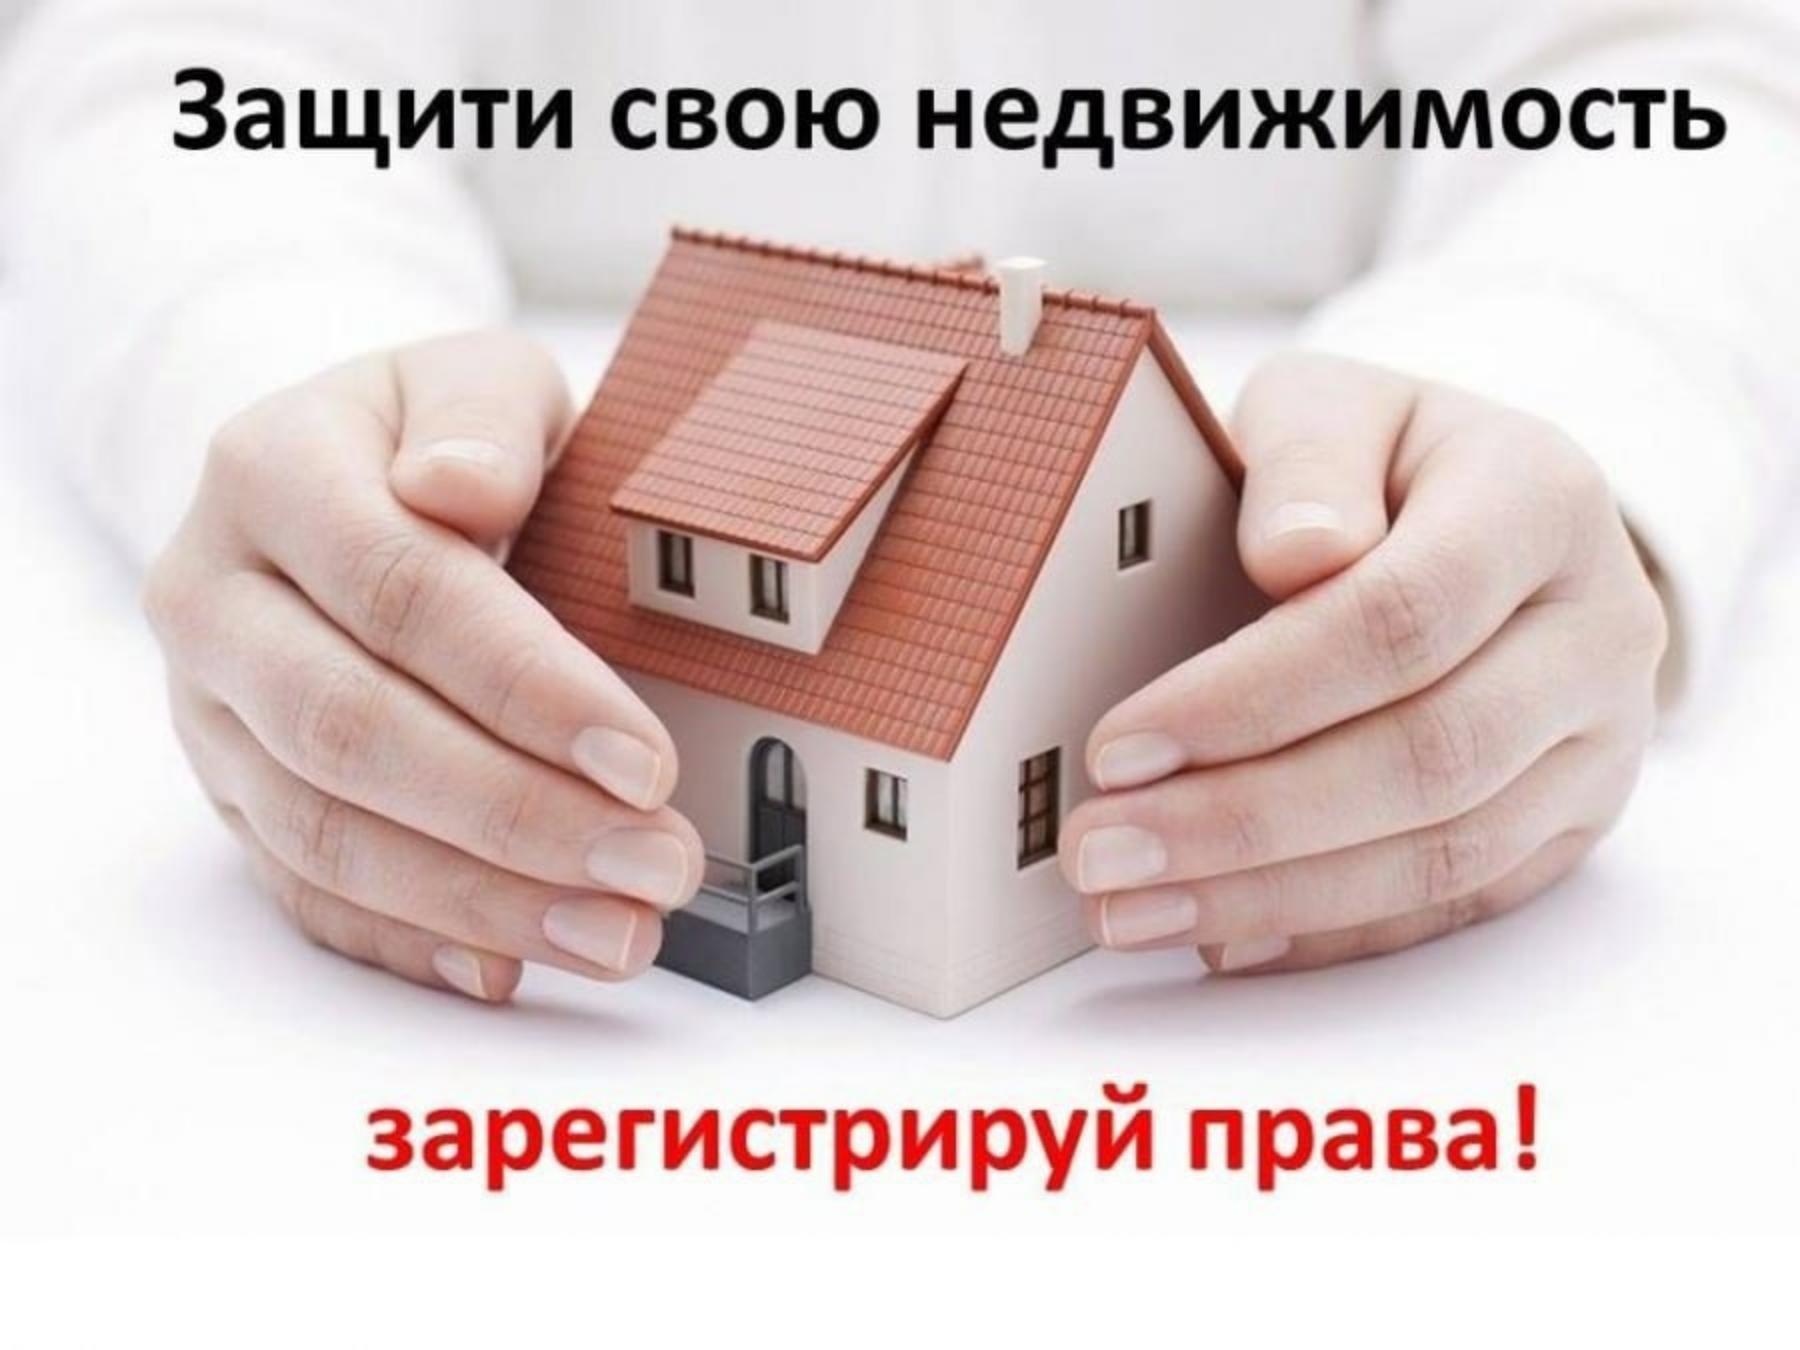 Зарегистрируйте права собственности на недвижимость!